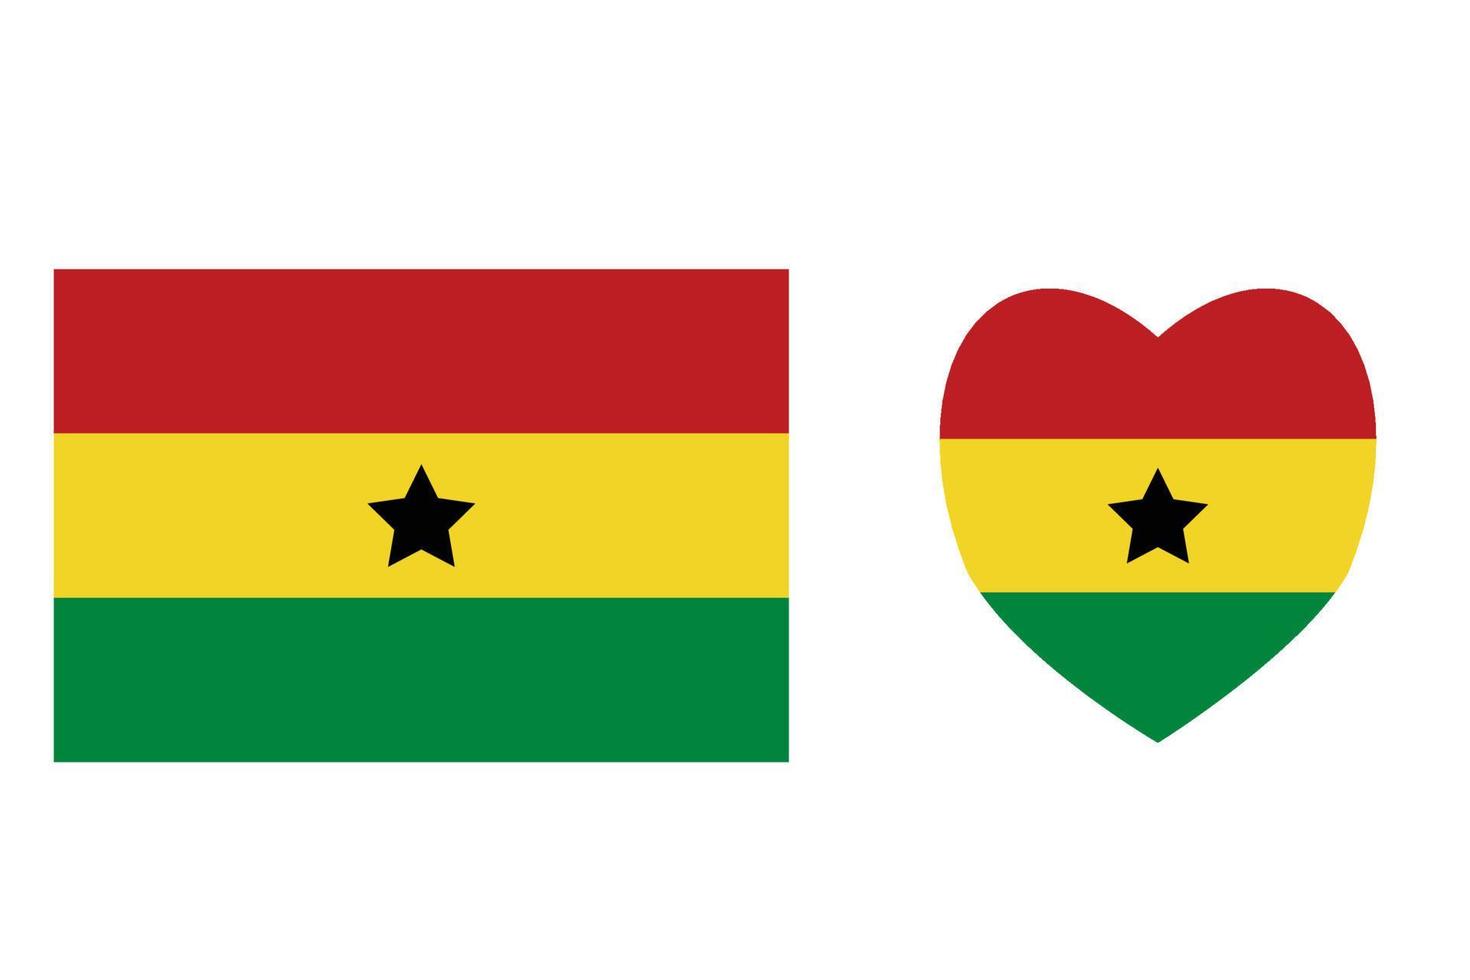 Ghana ufficialmente bandiera gratuito vettore